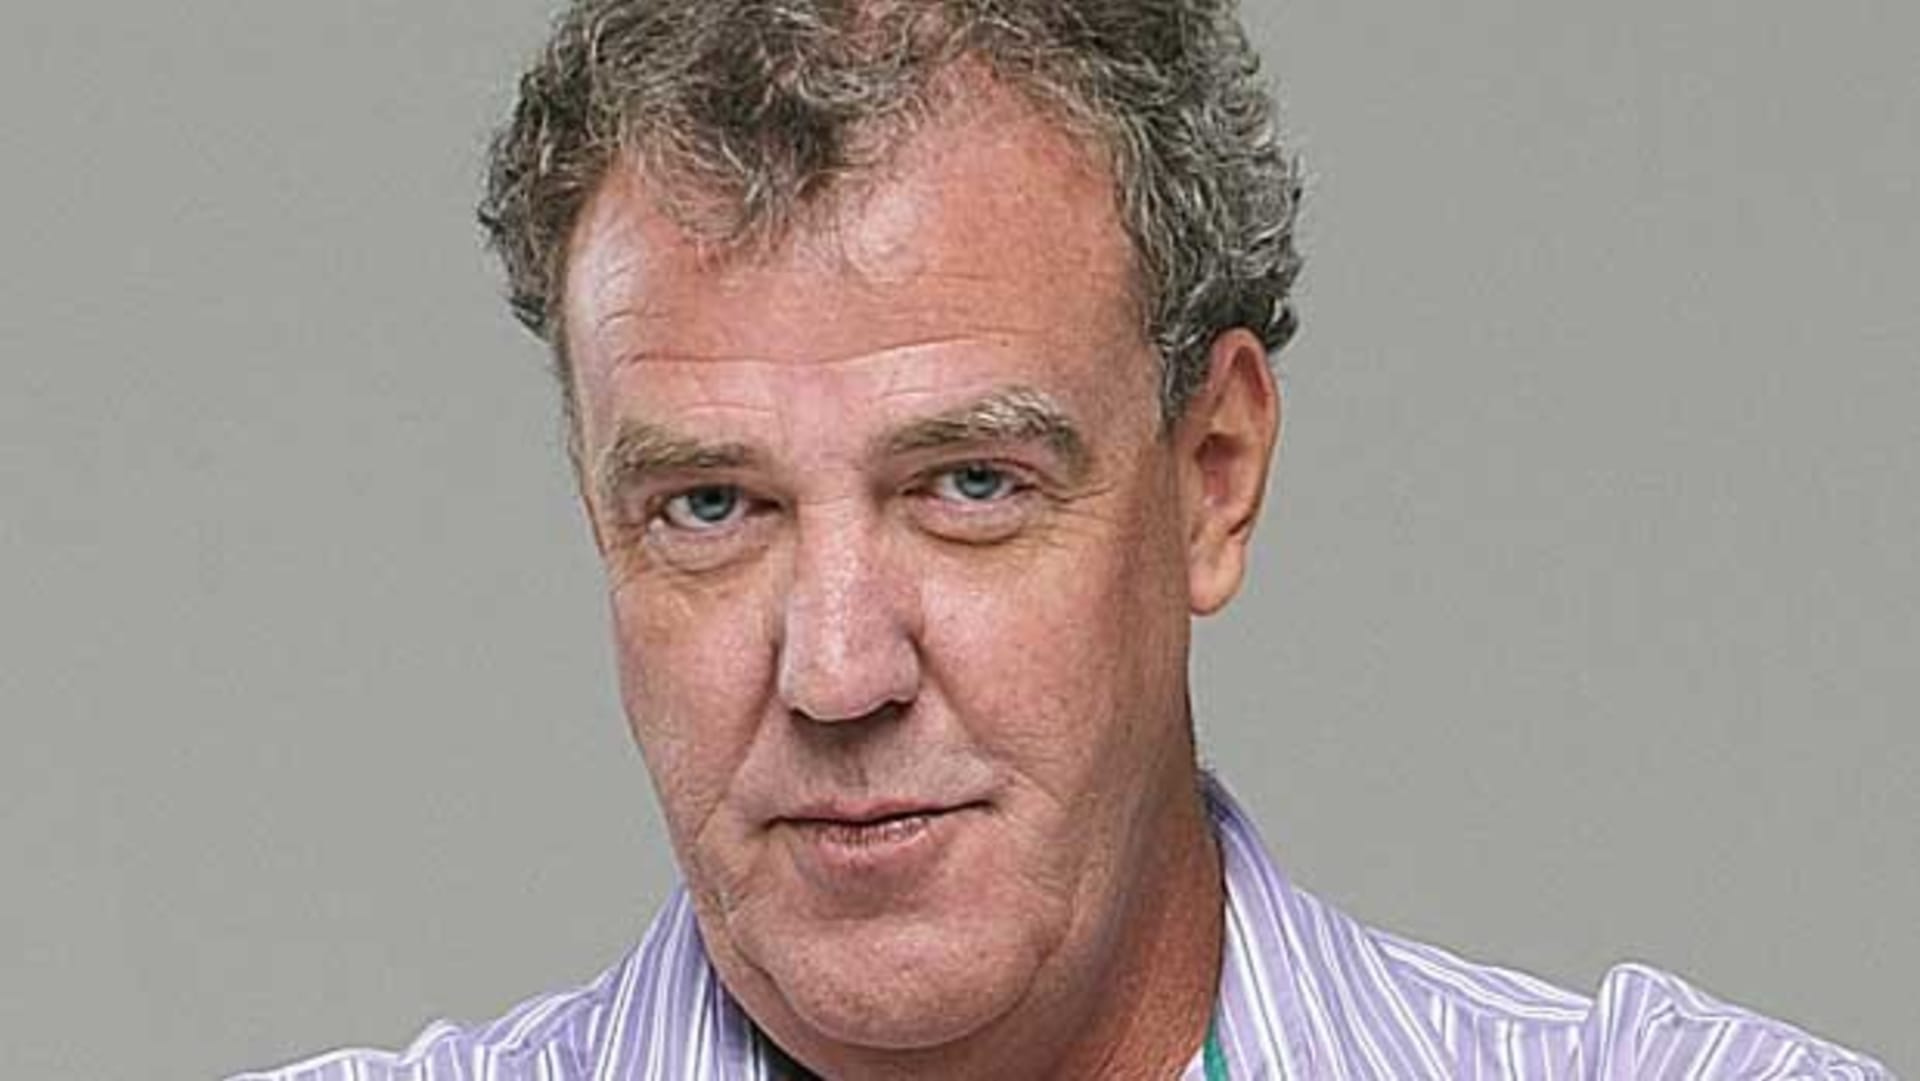 Jeremy Clarkson - Top Gear